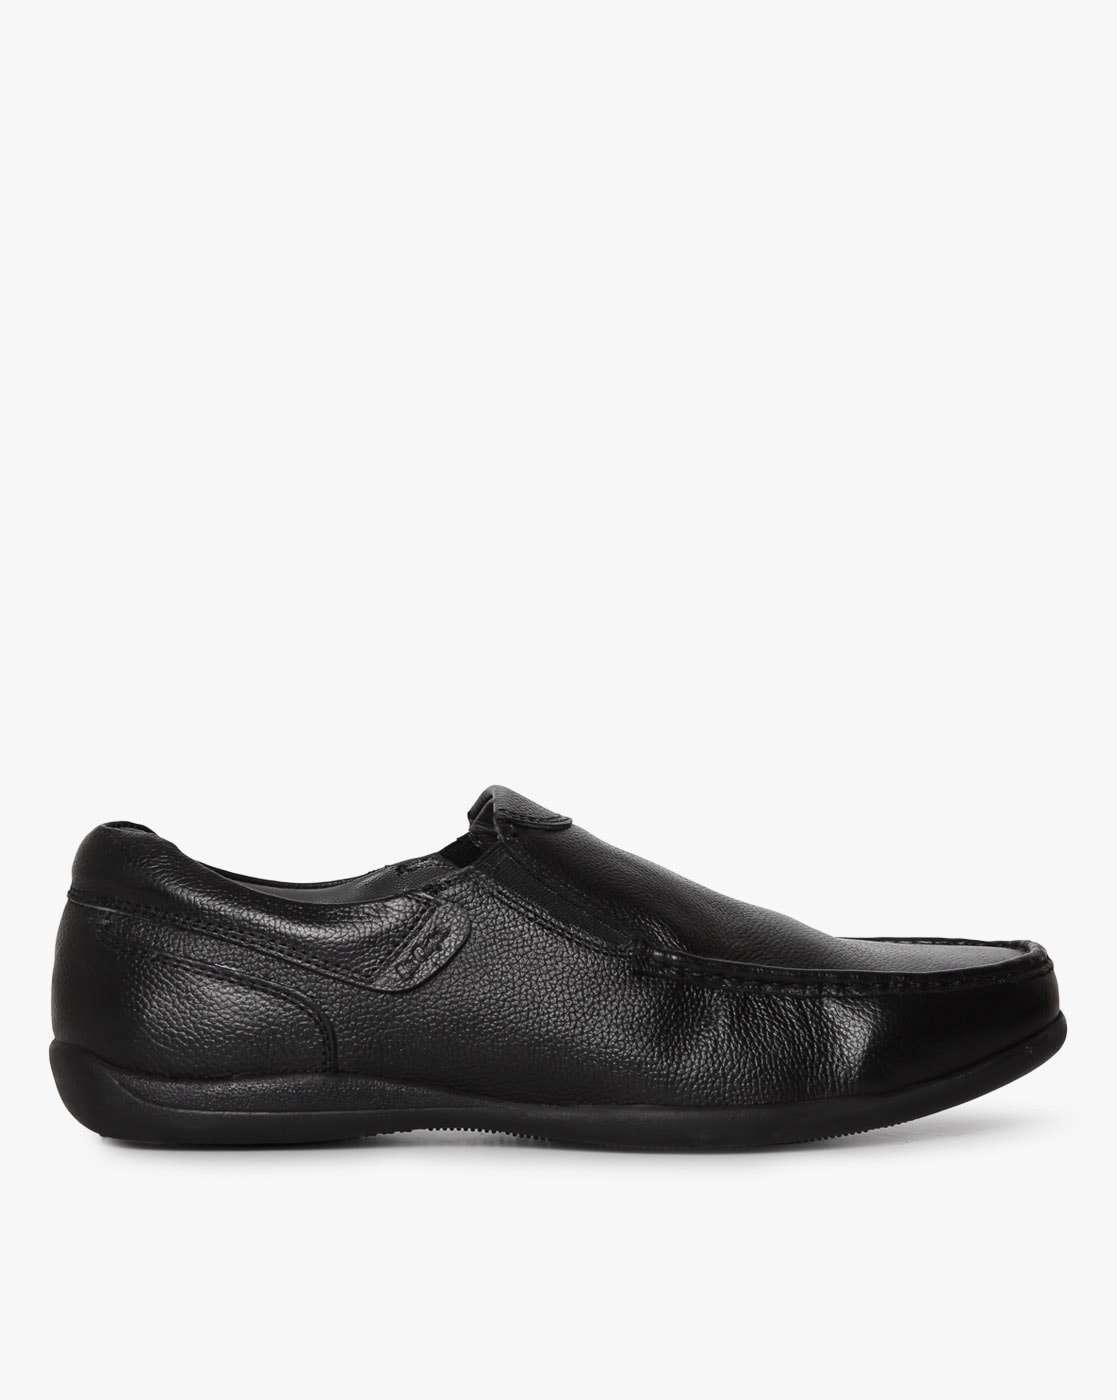 lee cooper formal shoes slip on